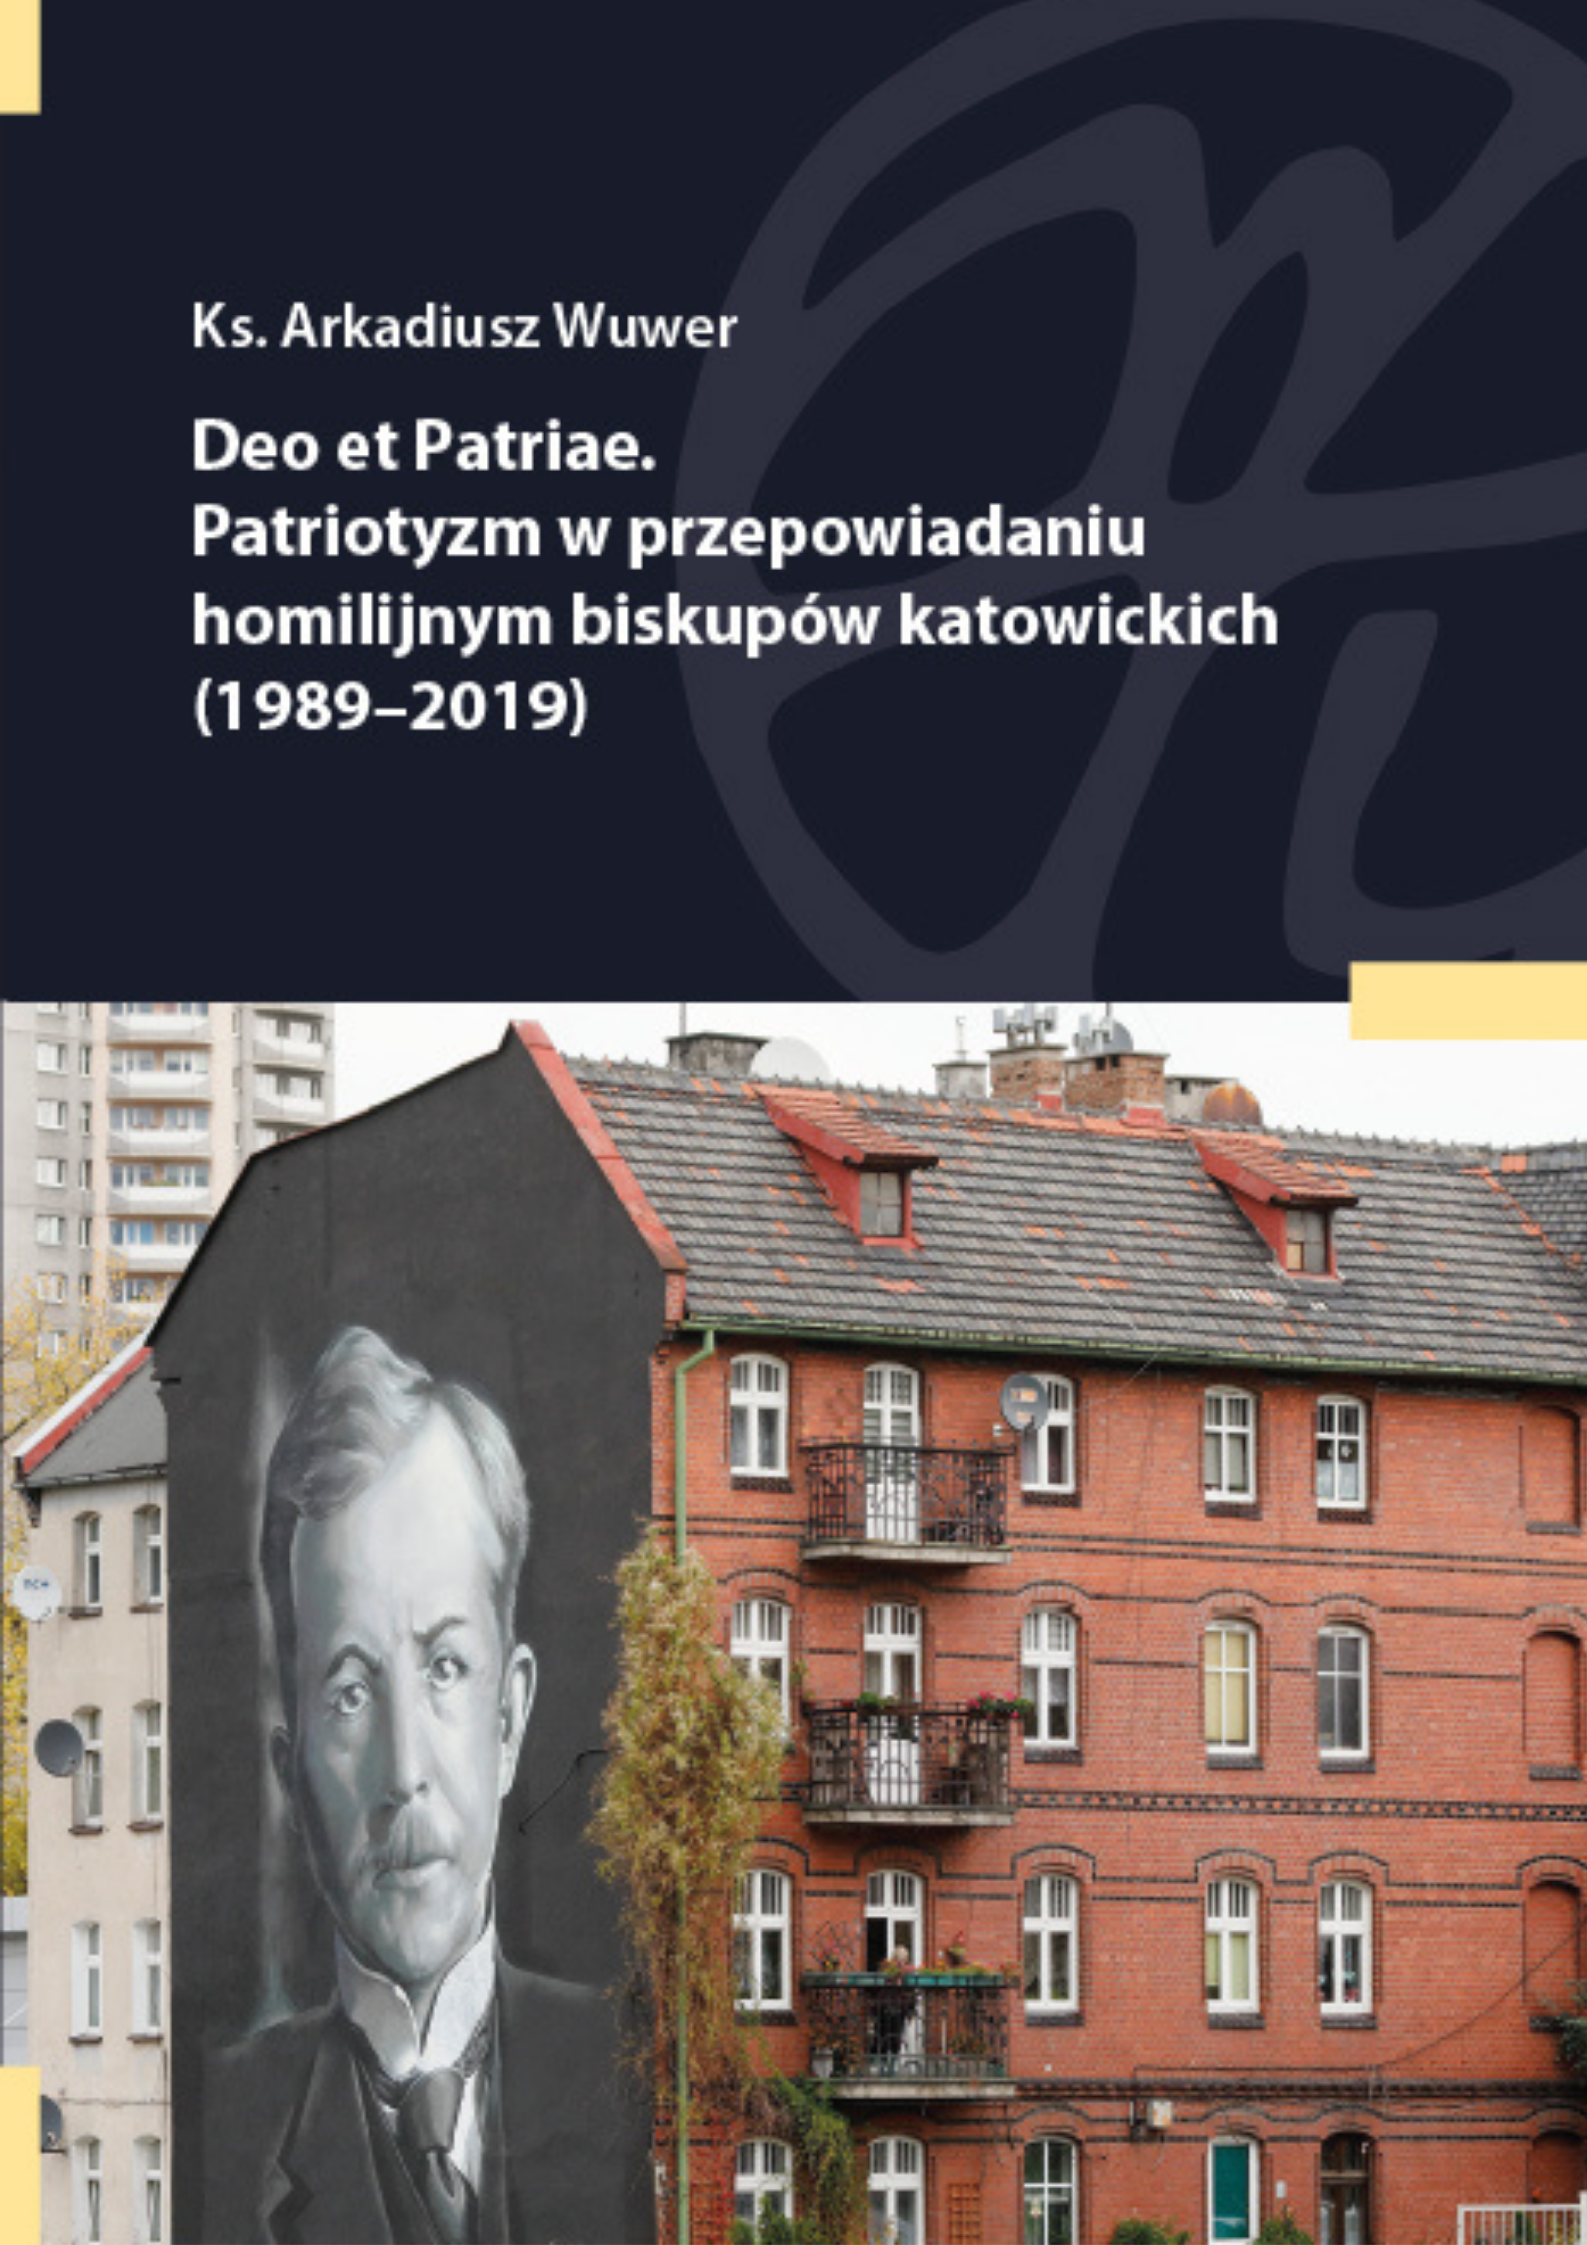 Deo et Patriae. Patriotyzm w przepowiadaniu homilijnym biskupów katowickich (1989-2019)